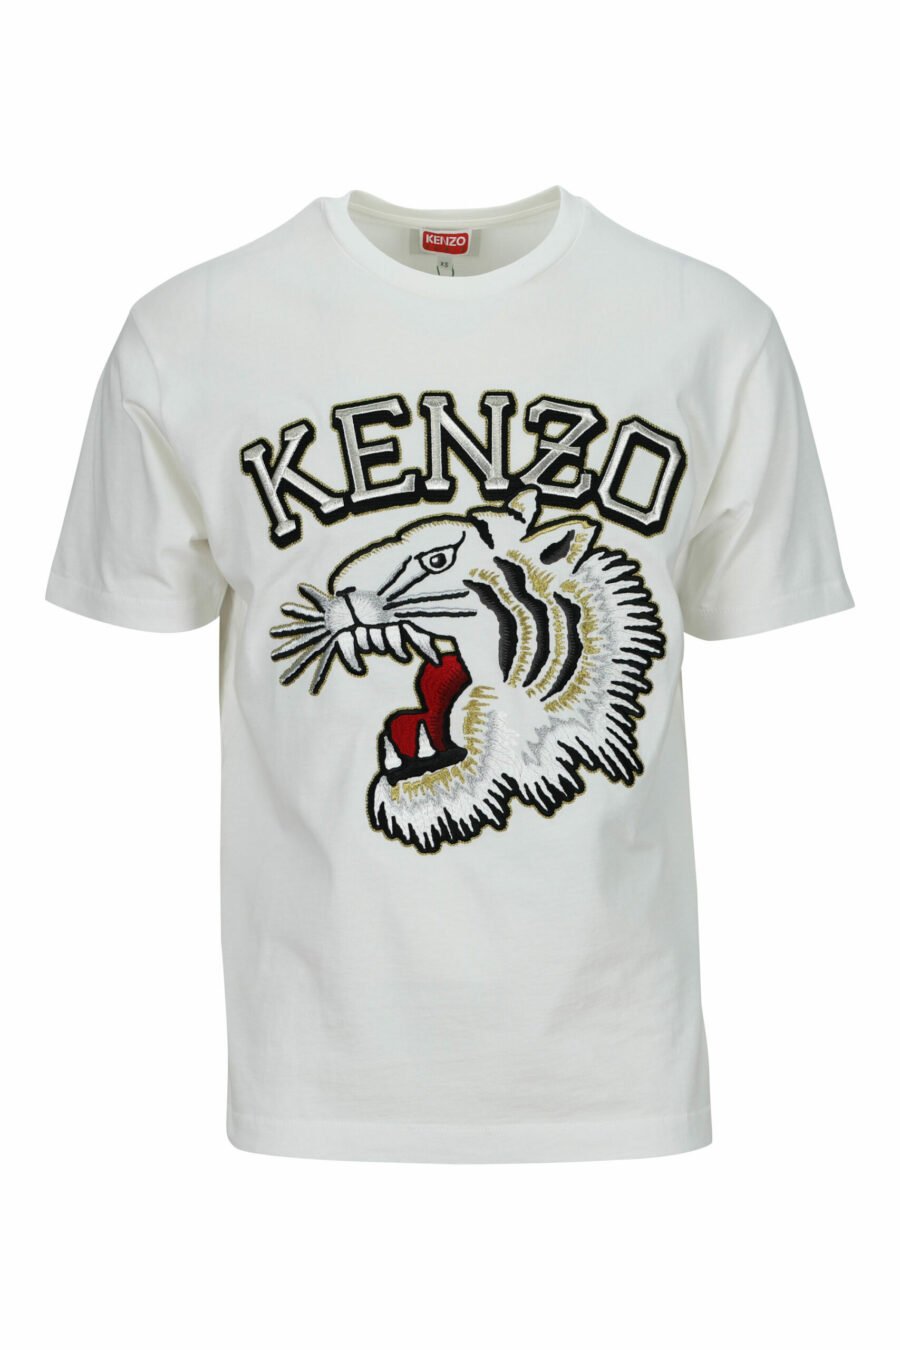 Weißes T-Shirt in Übergröße mit großem, geprägtem Tiger-Logo - 3612230568013 skaliert